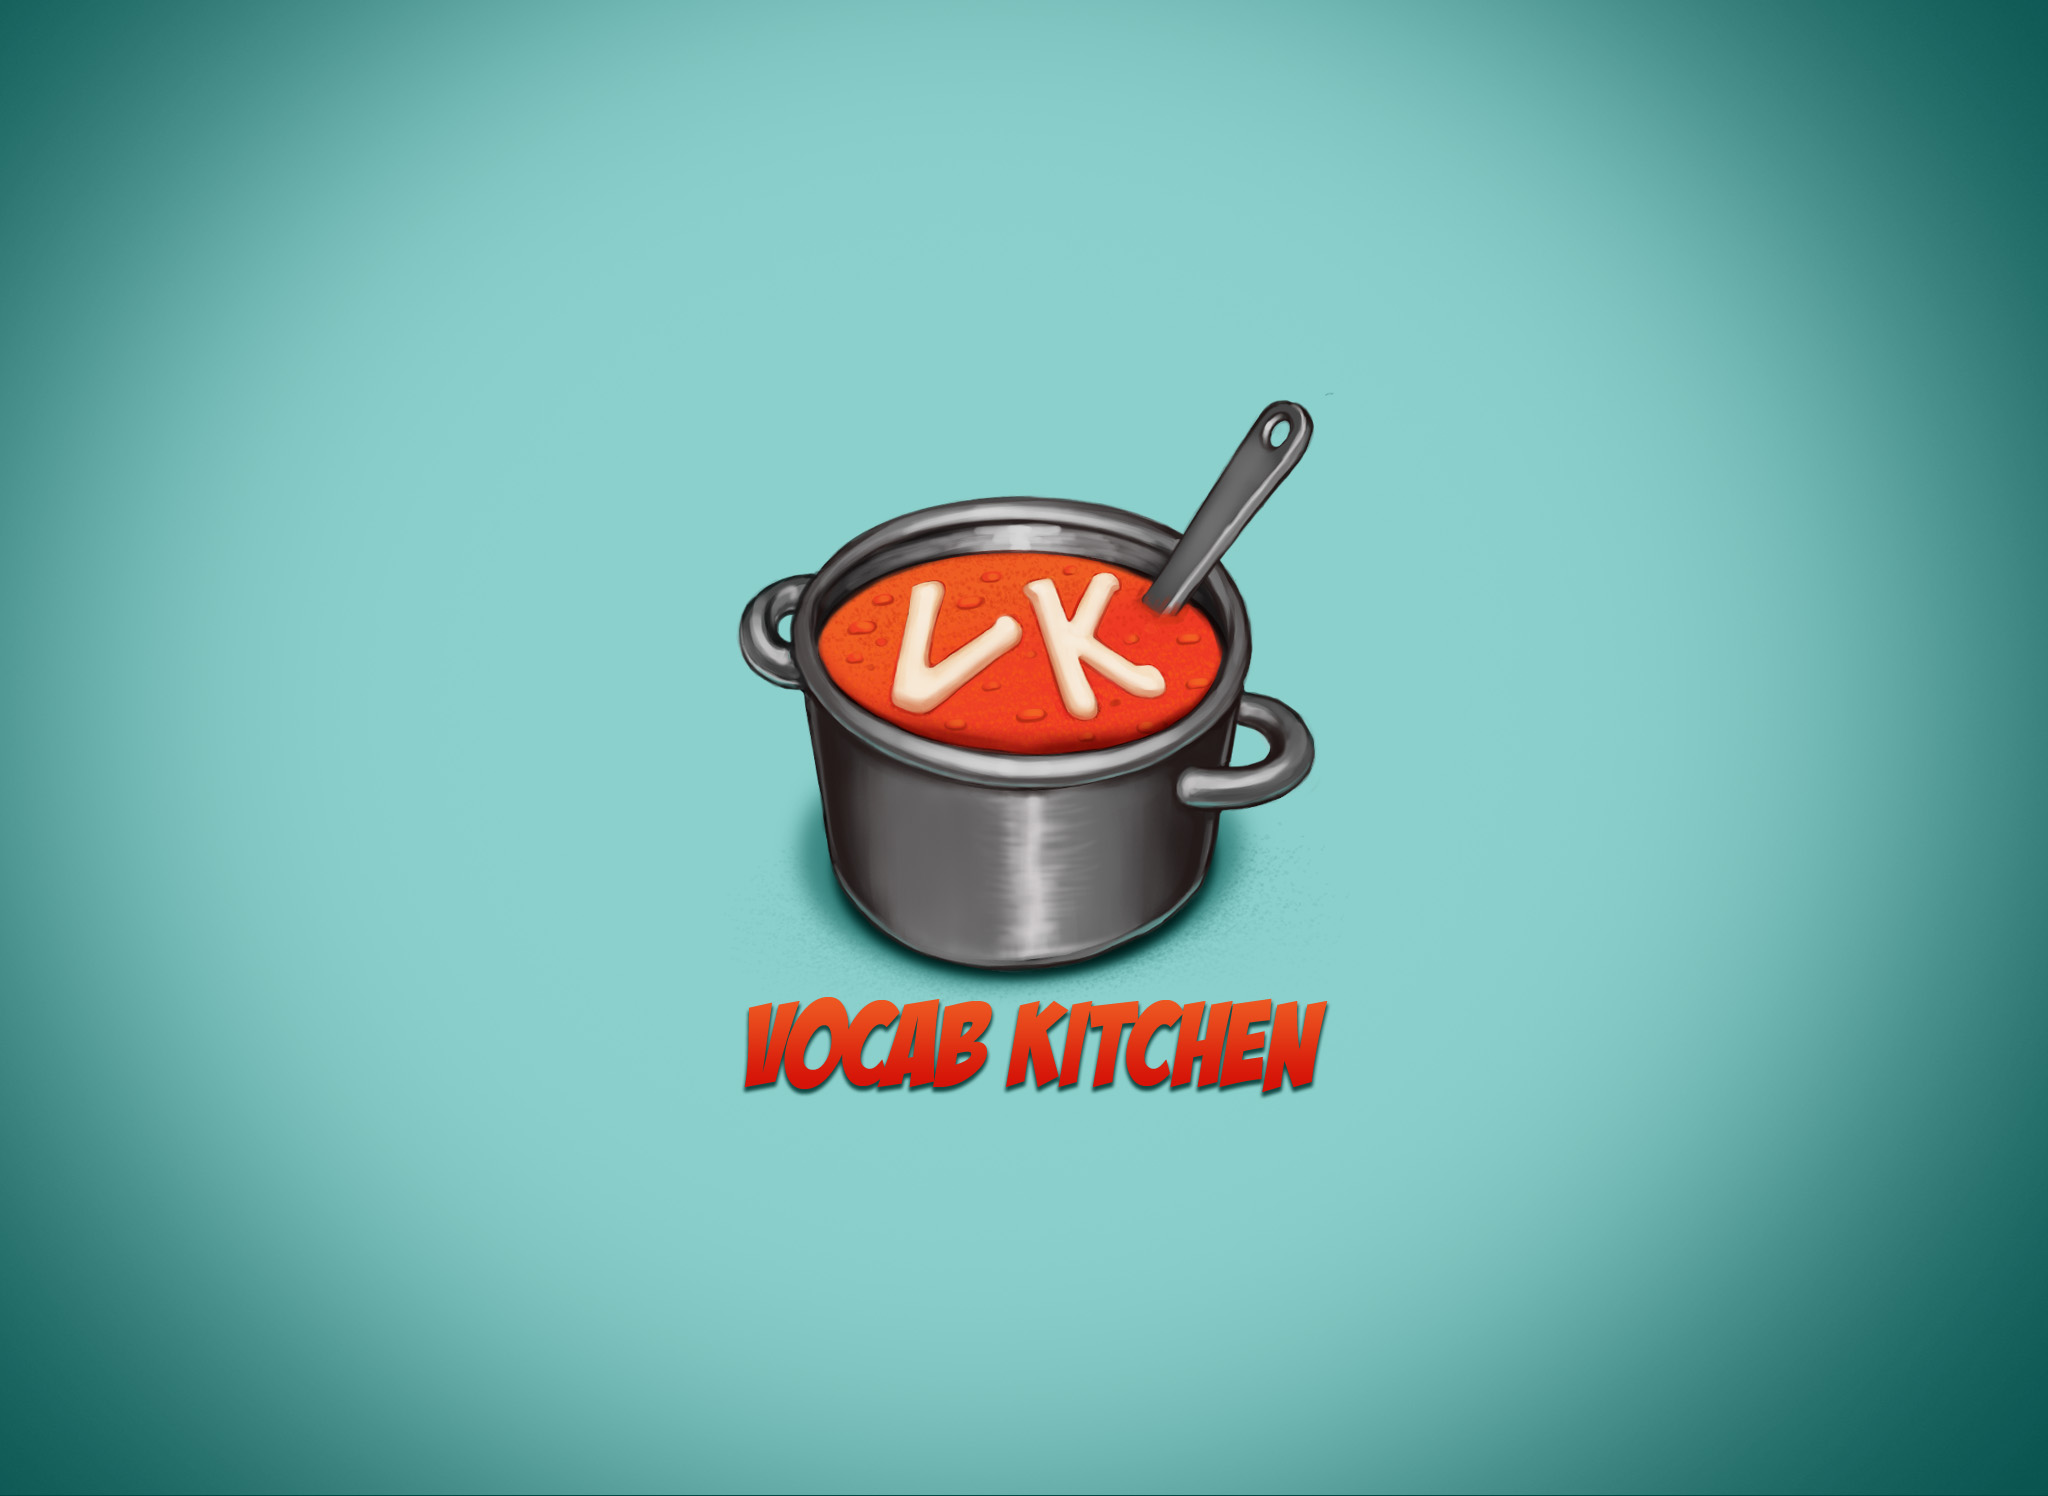 Vocab Kitchen